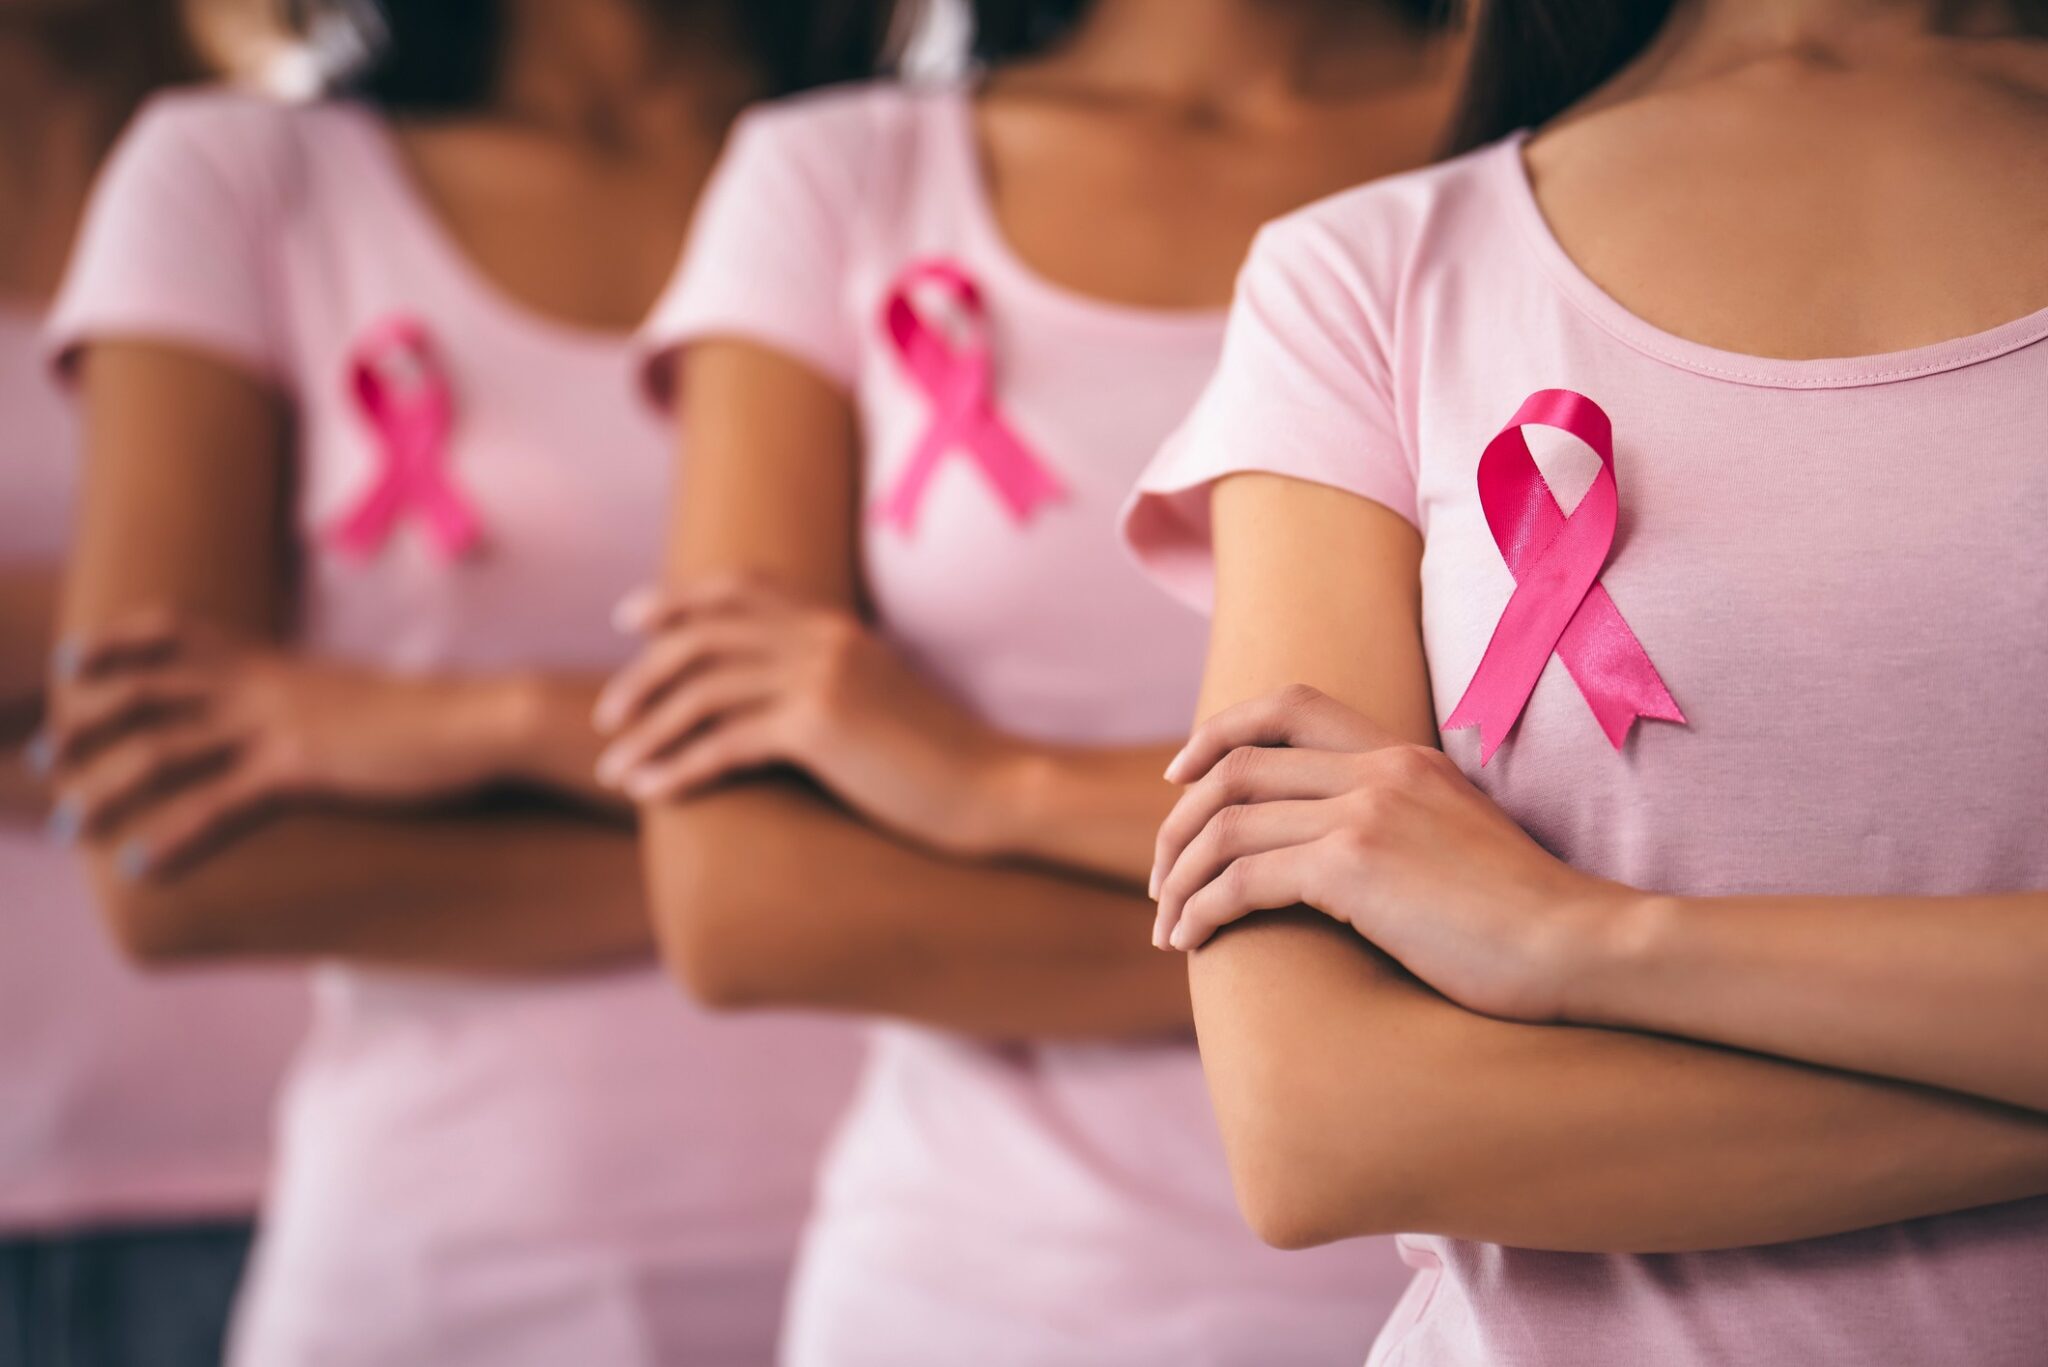 Febrasgo revela exames para prevenir e detectar câncer de mama